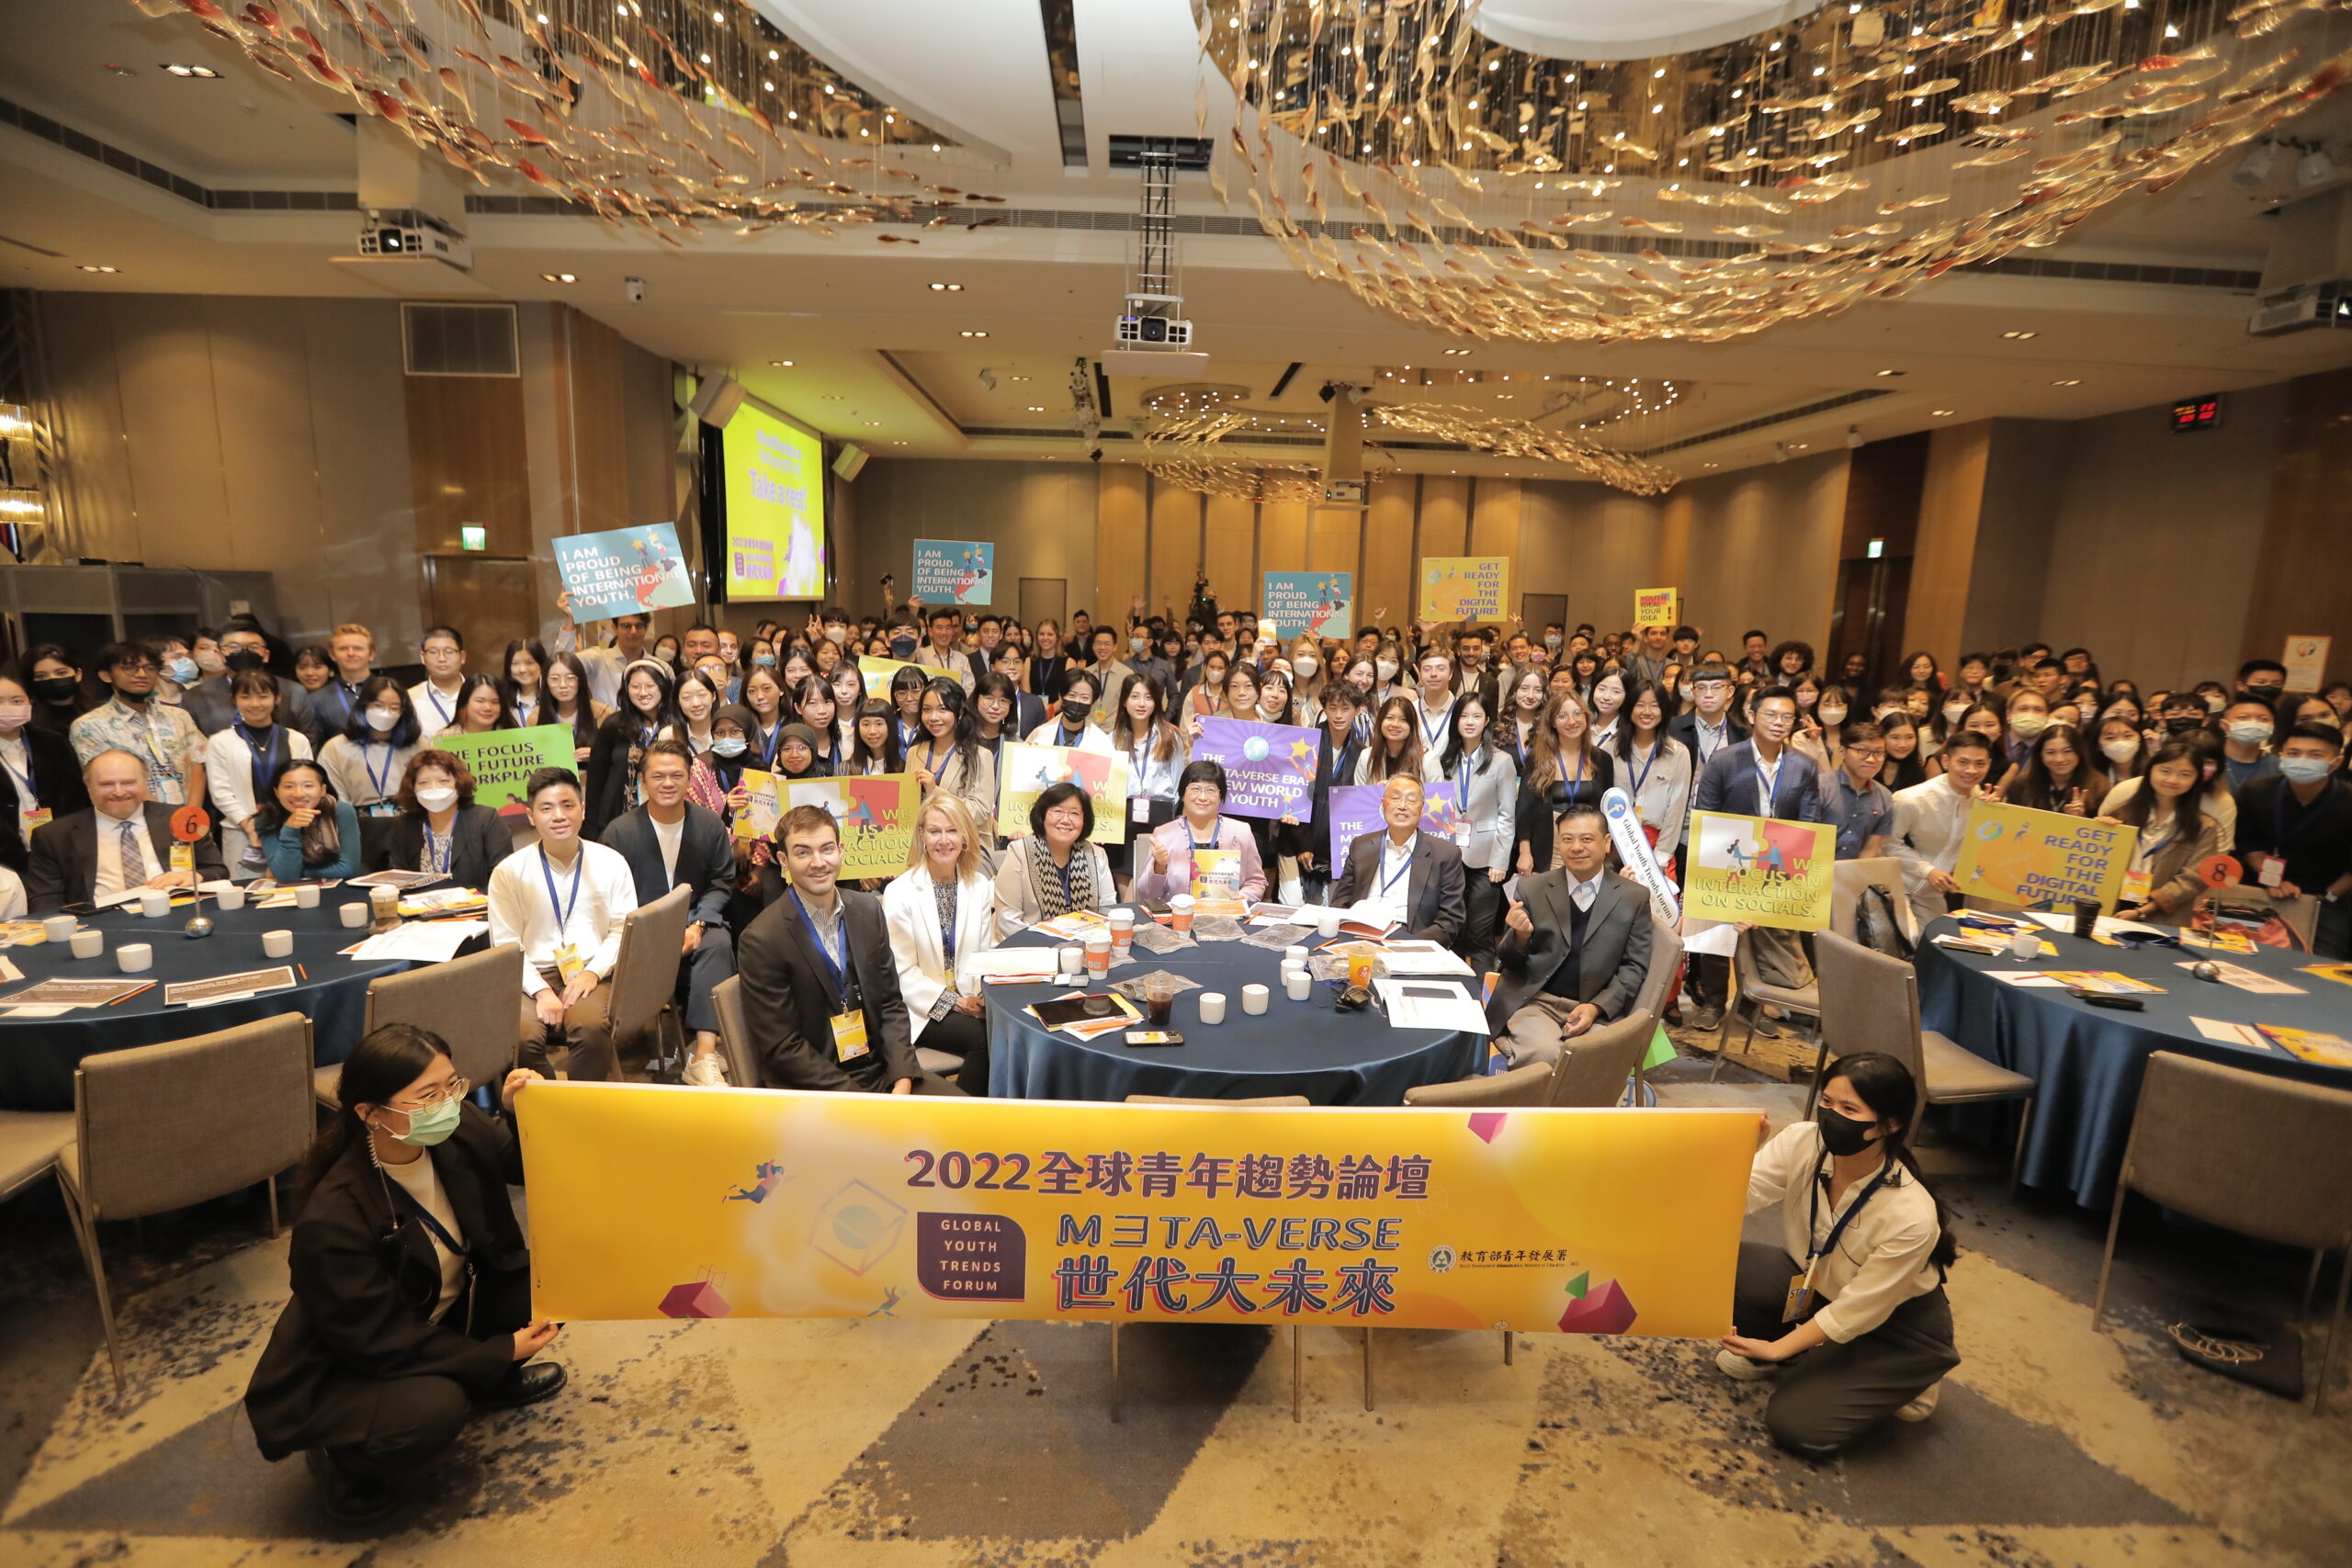 教育部青年發展署年度國際性盛會「2022全球青年趨勢論壇」在臺北隆重登場。